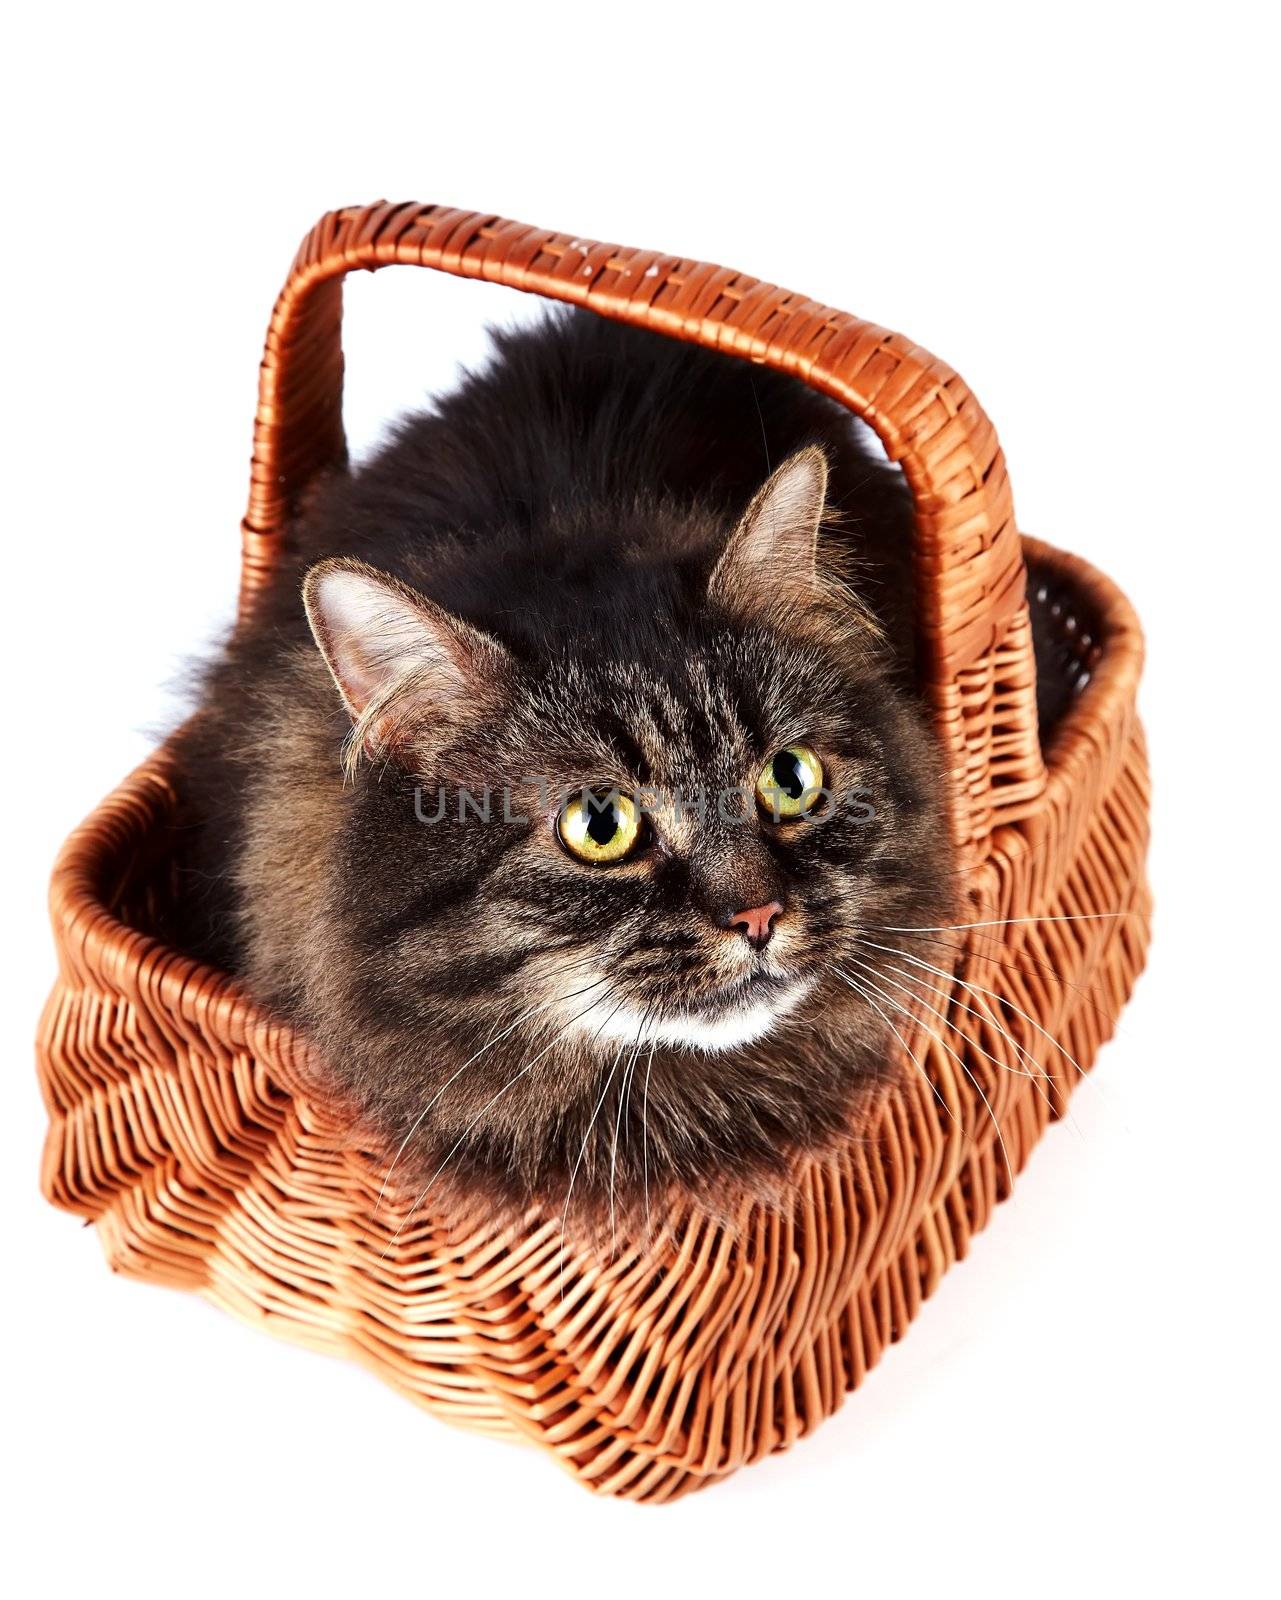 Fluffy cat in a wattled basket by Azaliya